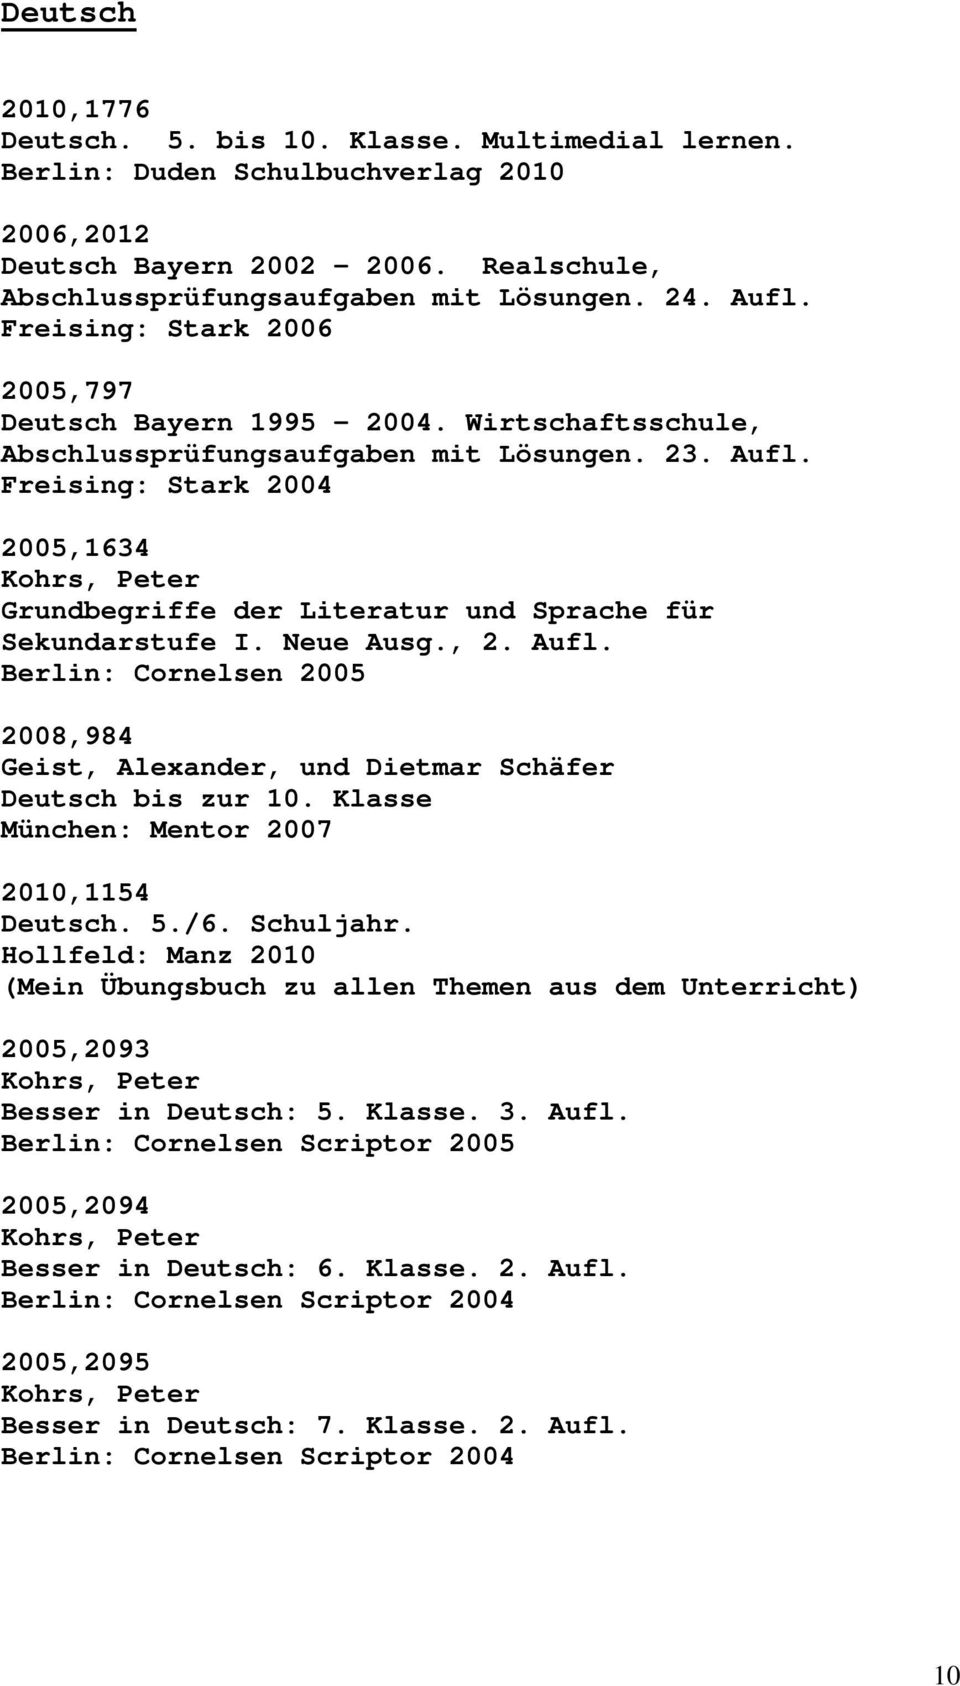 Freising: Stark 2004 2005,1634 Kohrs, Peter Grundbegriffe der Literatur und Sprache für Sekundarstufe I. Neue Ausg., 2. Aufl. 2008,984 Geist, Alexander, und Dietmar Schäfer Deutsch bis zur 10.